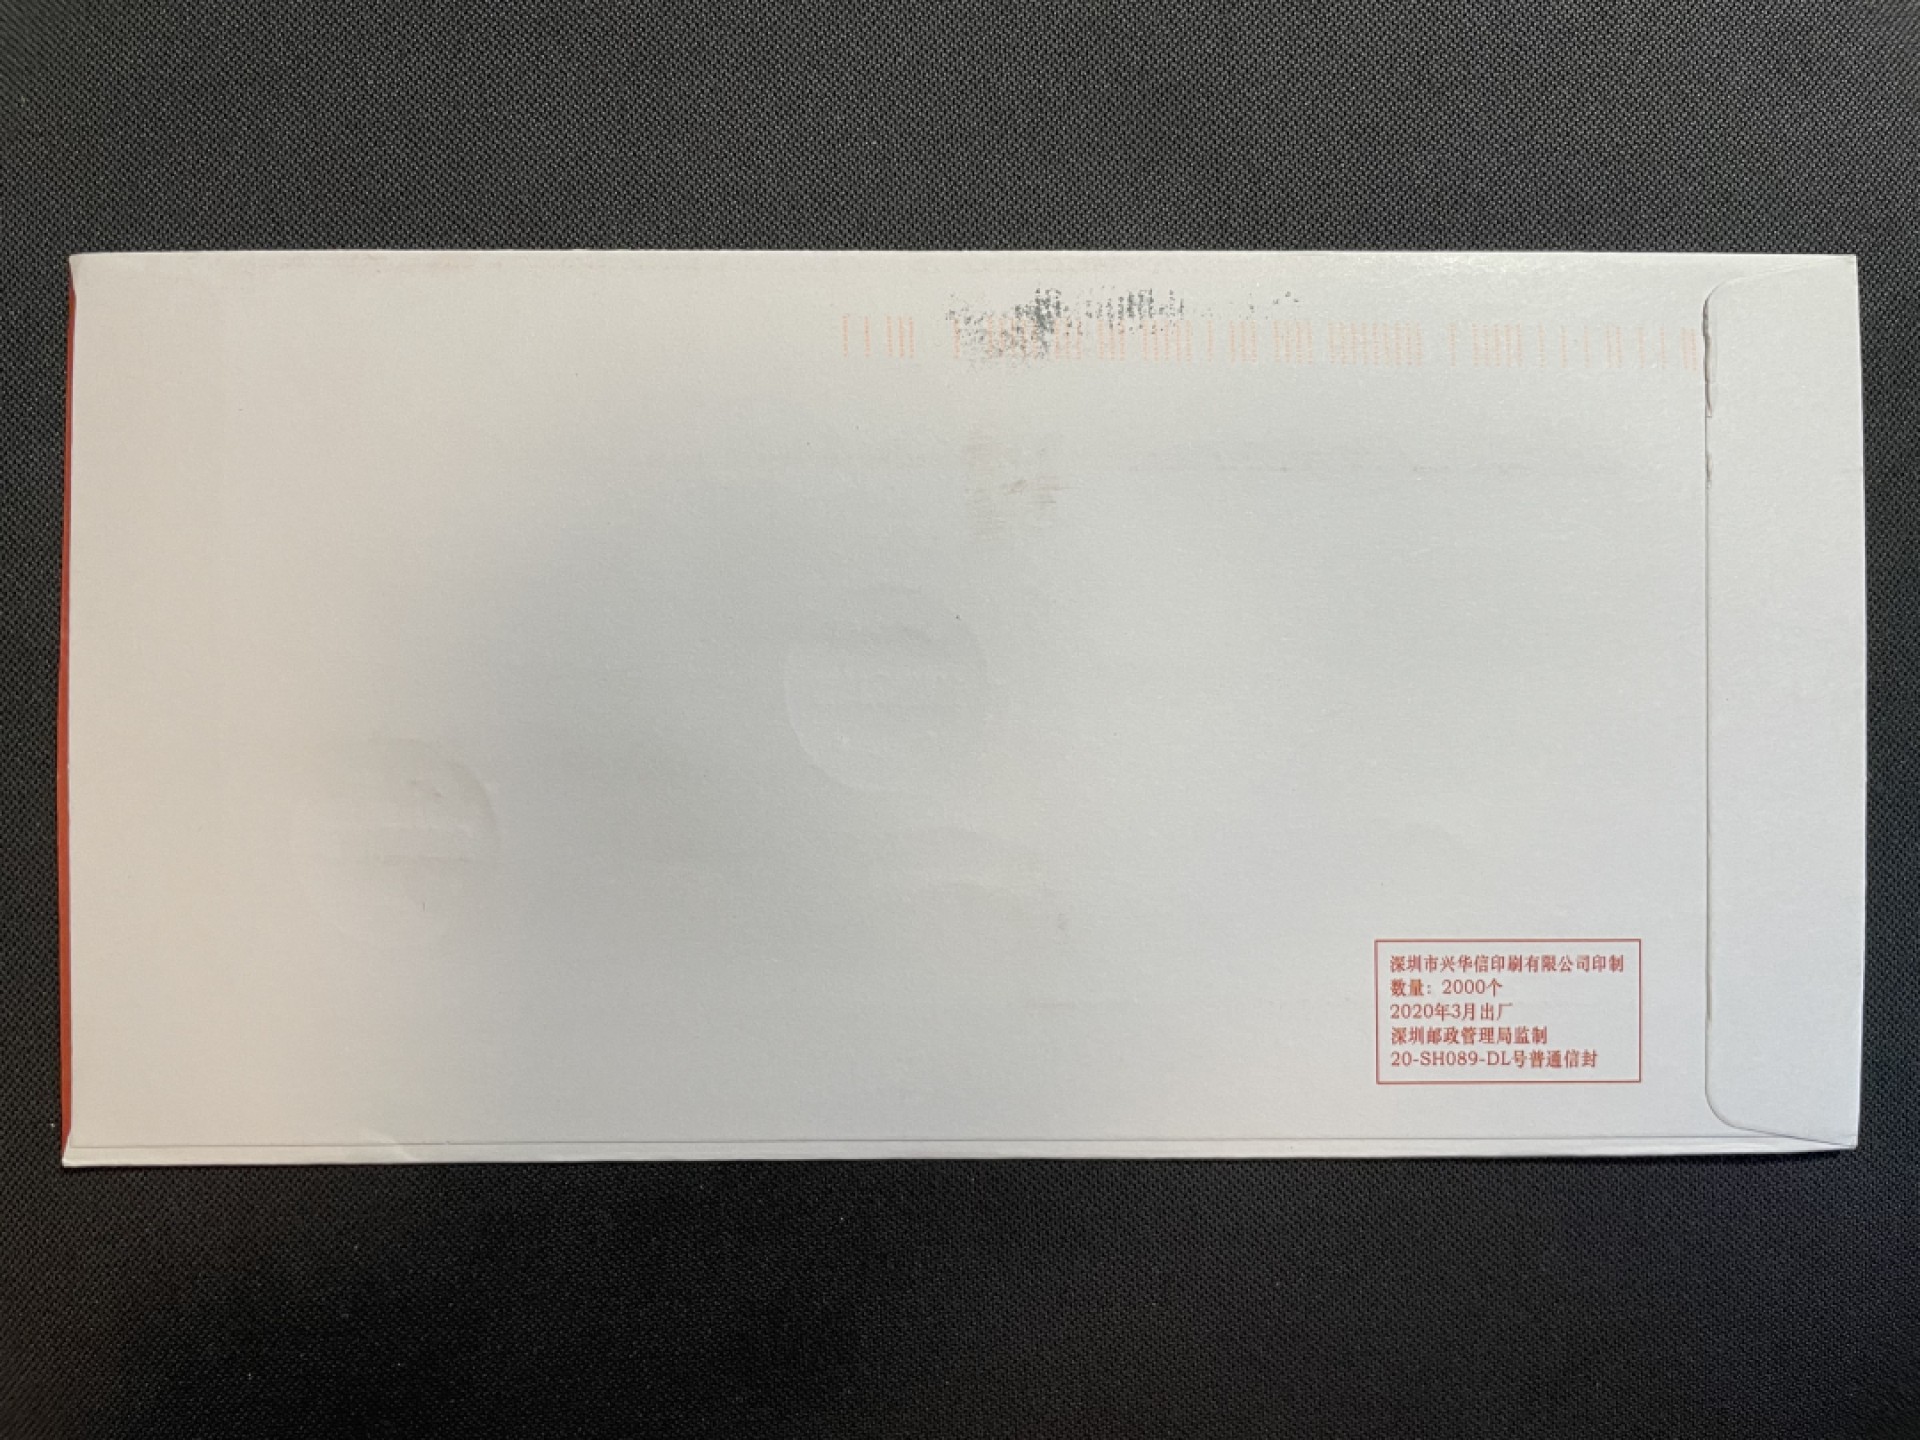 【首日封】特11-2020 抗疫邮票 首日武汉东亭原地实寄澳洲 贴红条 有清晰日期落地喷码